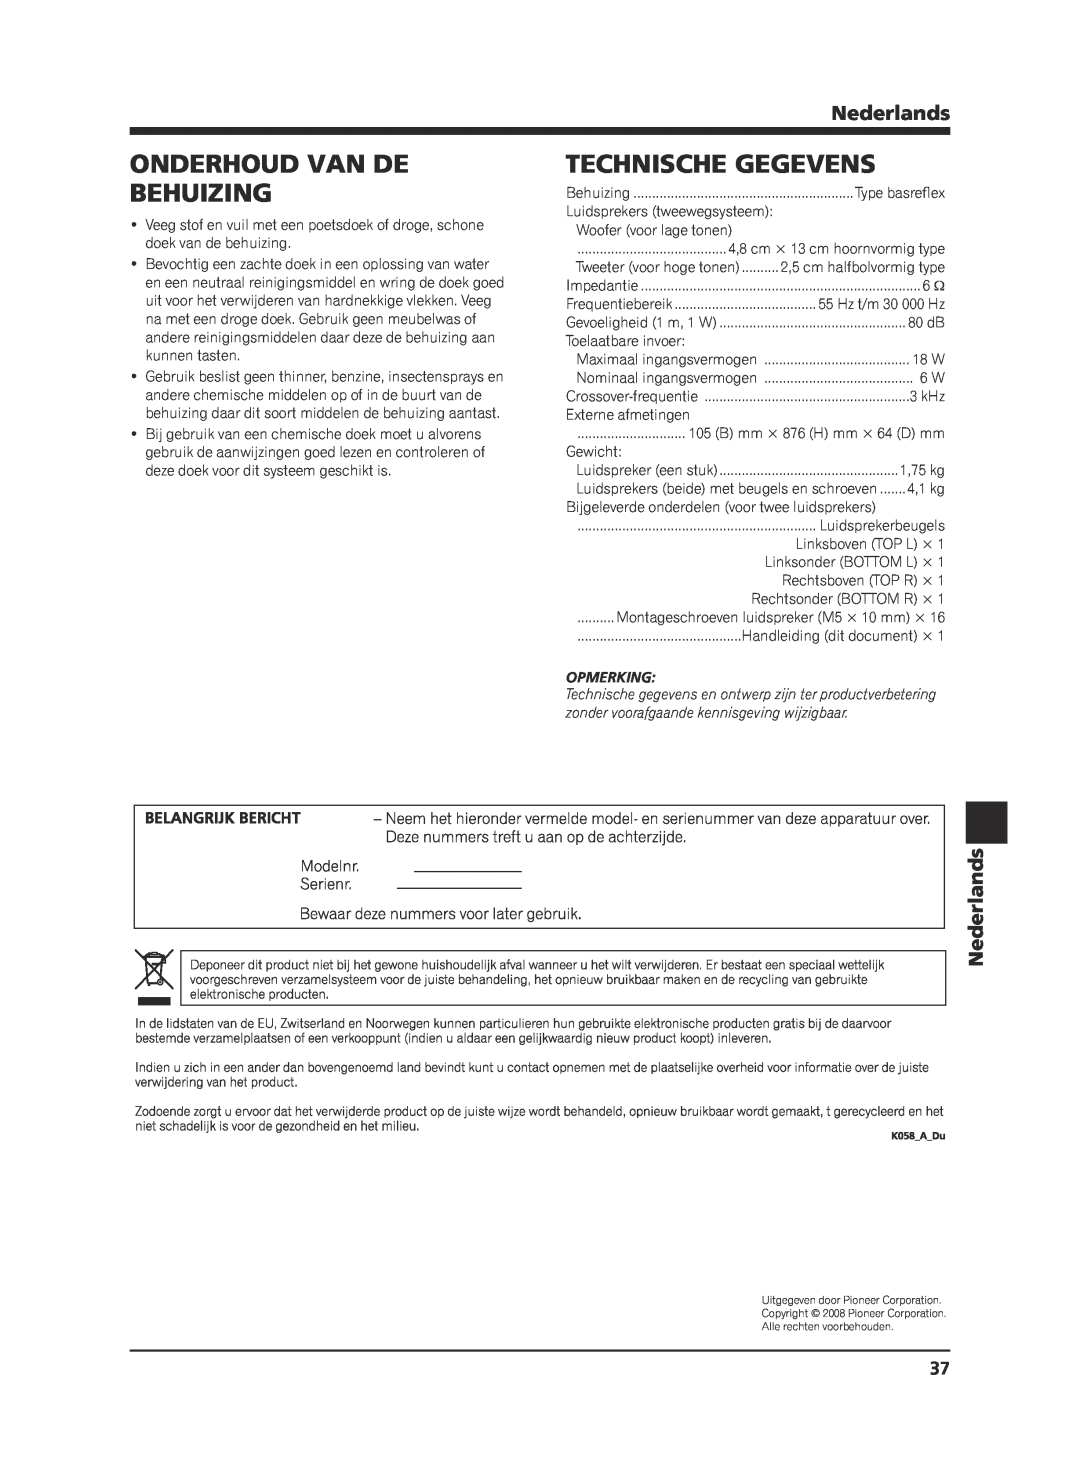 Pioneer KRP-S02 manual Onderhoud Van De Behuizing, Technische Gegevens, Nederlands, Opmerking 